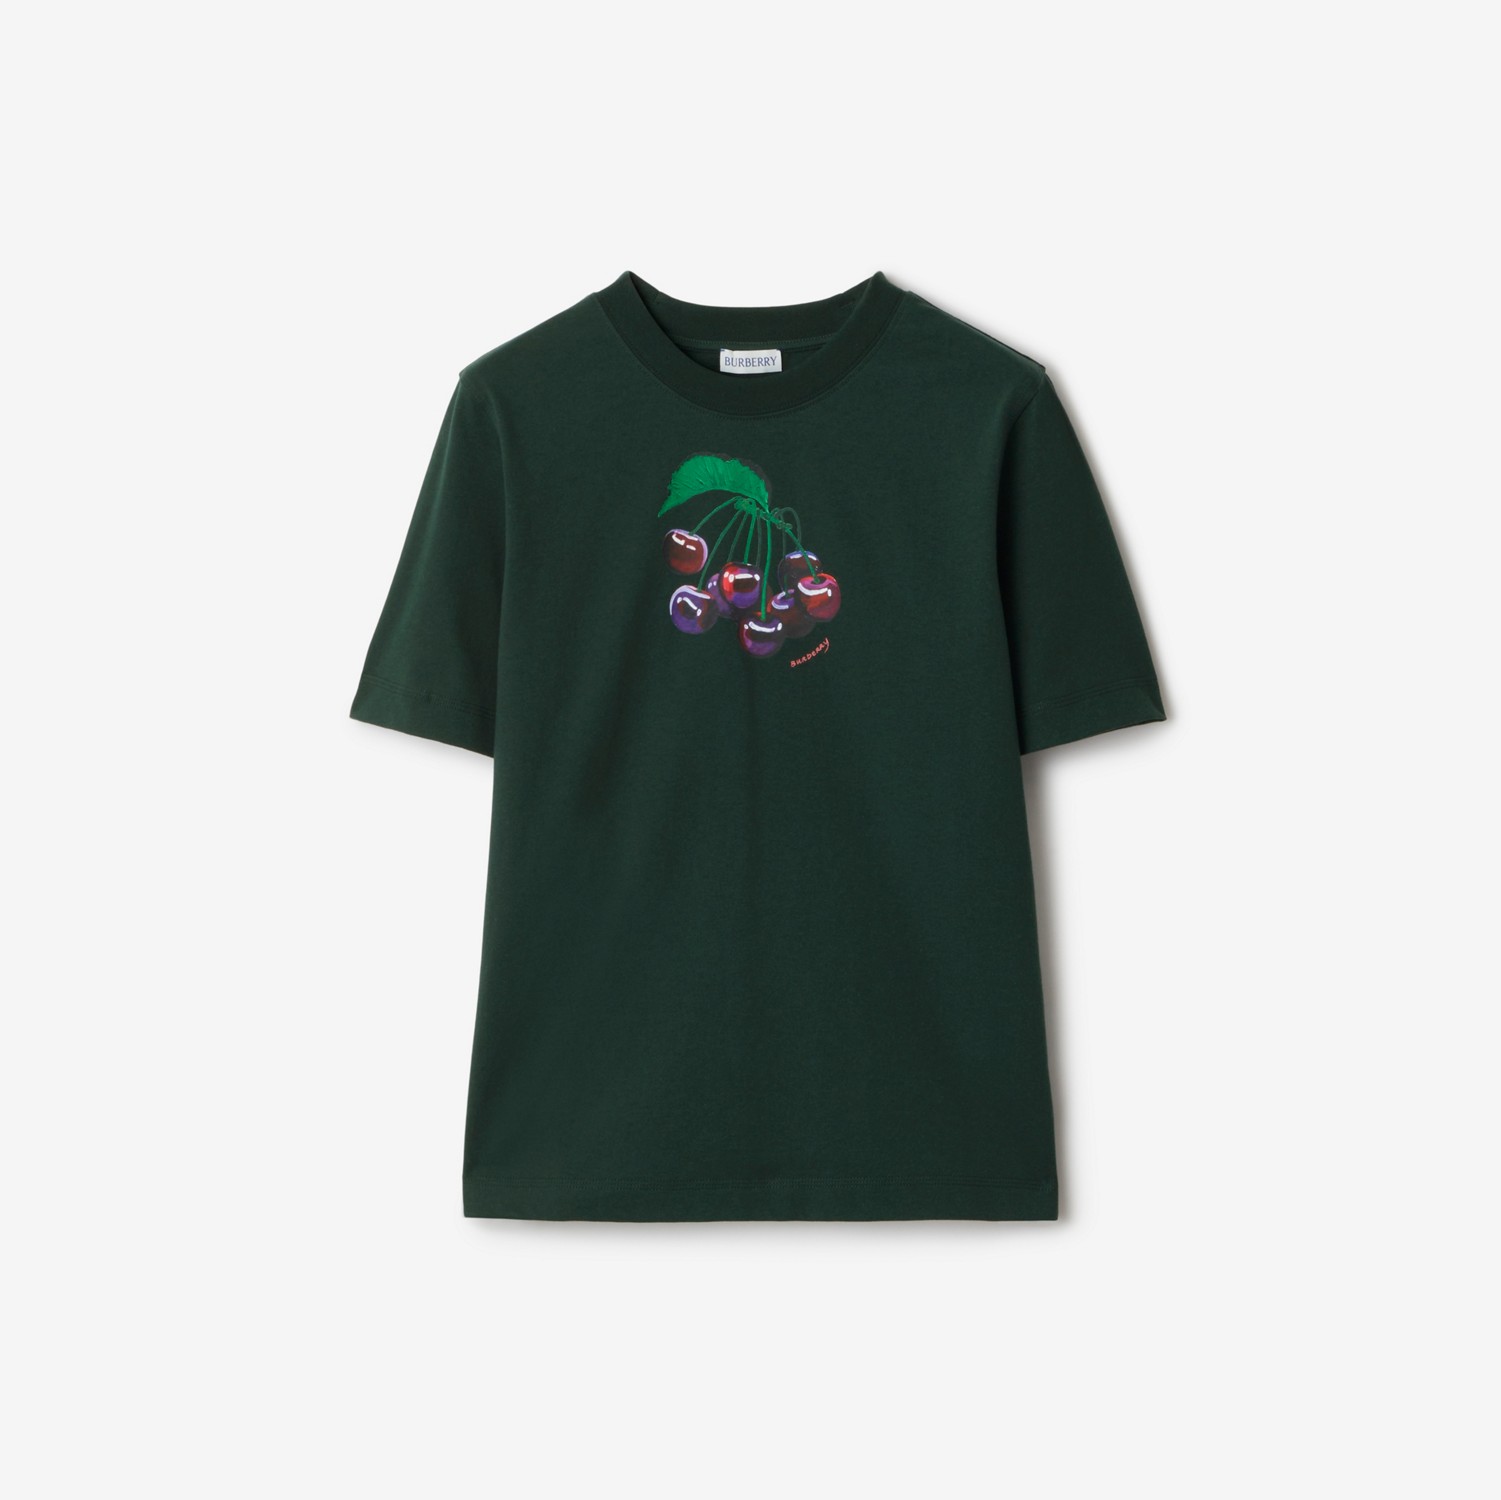 Camiseta en algodón con cerezas